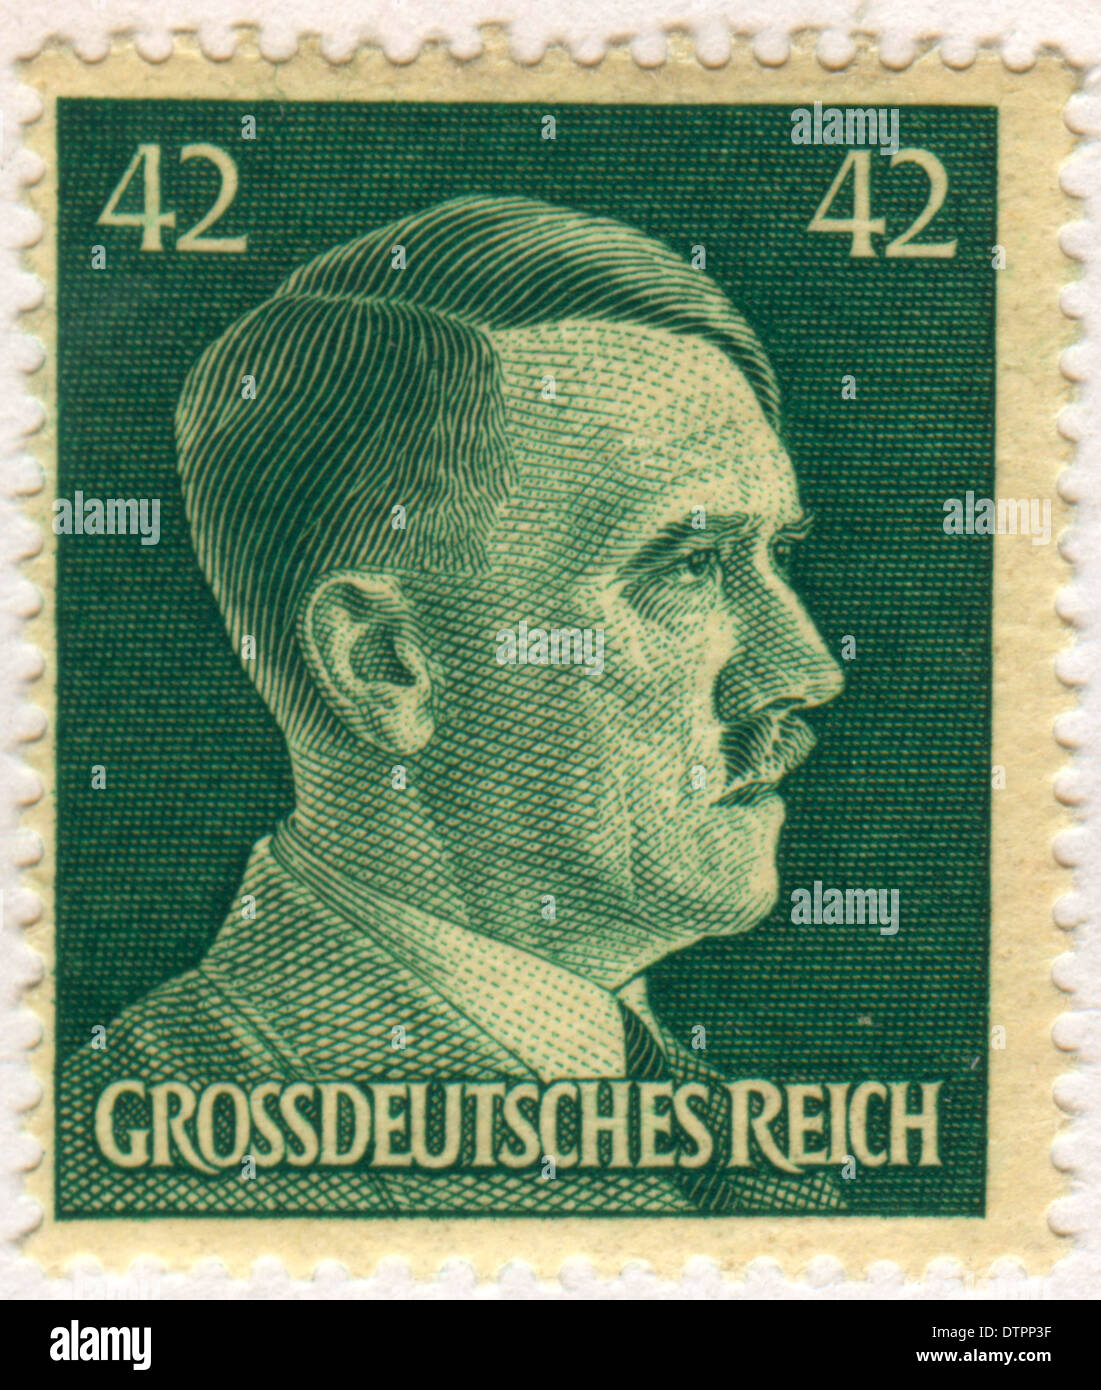 Deutschen Briefmarke aus dem NS-Regime, die das Bild von Adolf Hitler Stockfoto